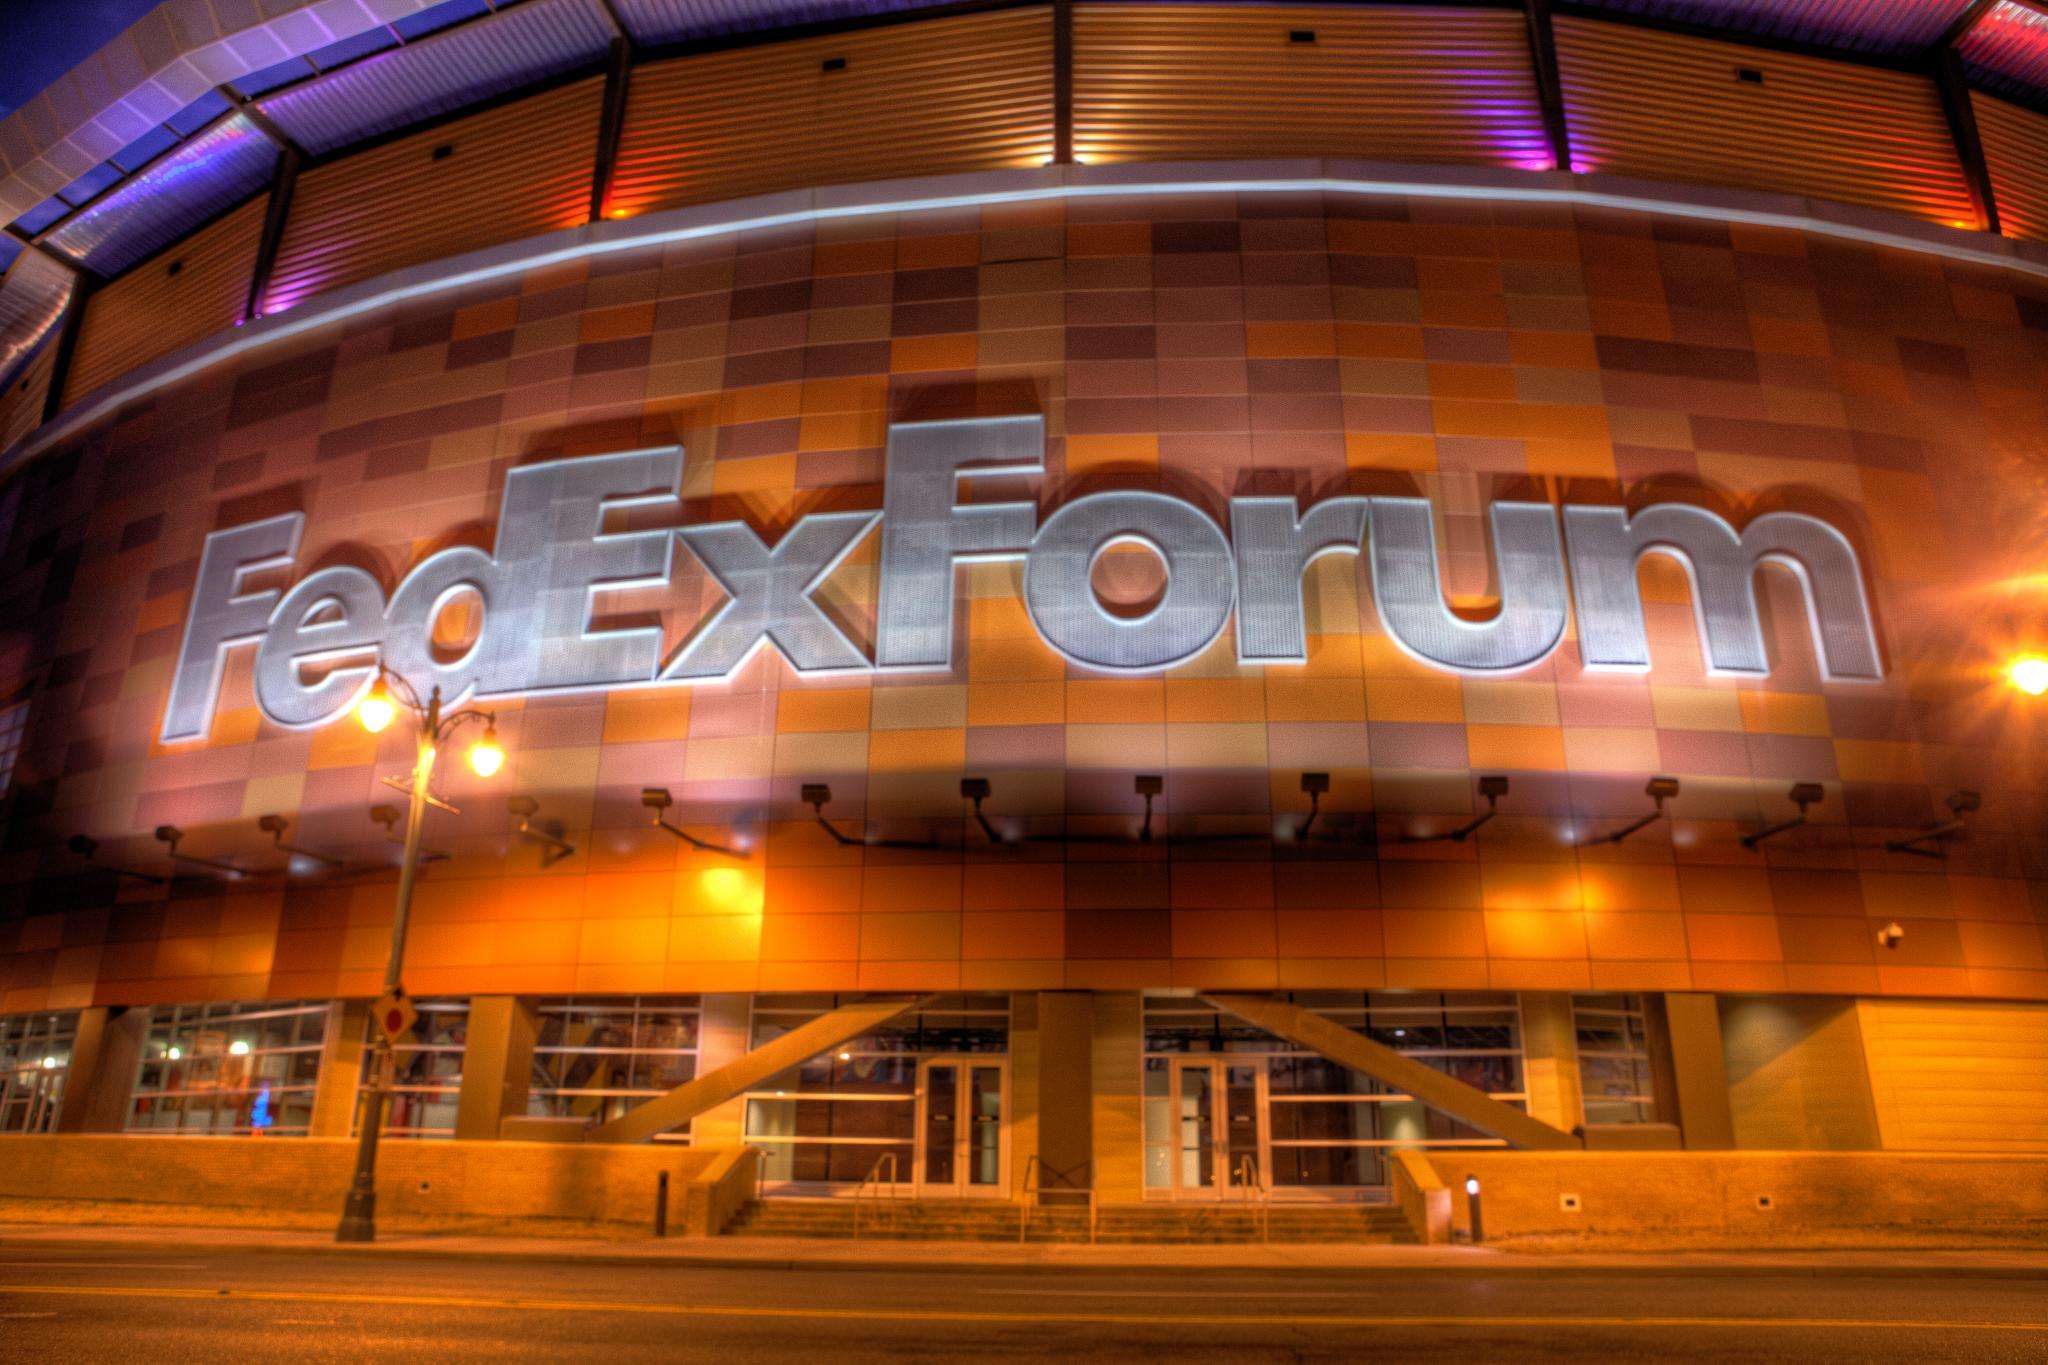 fedex forum grizzlies store